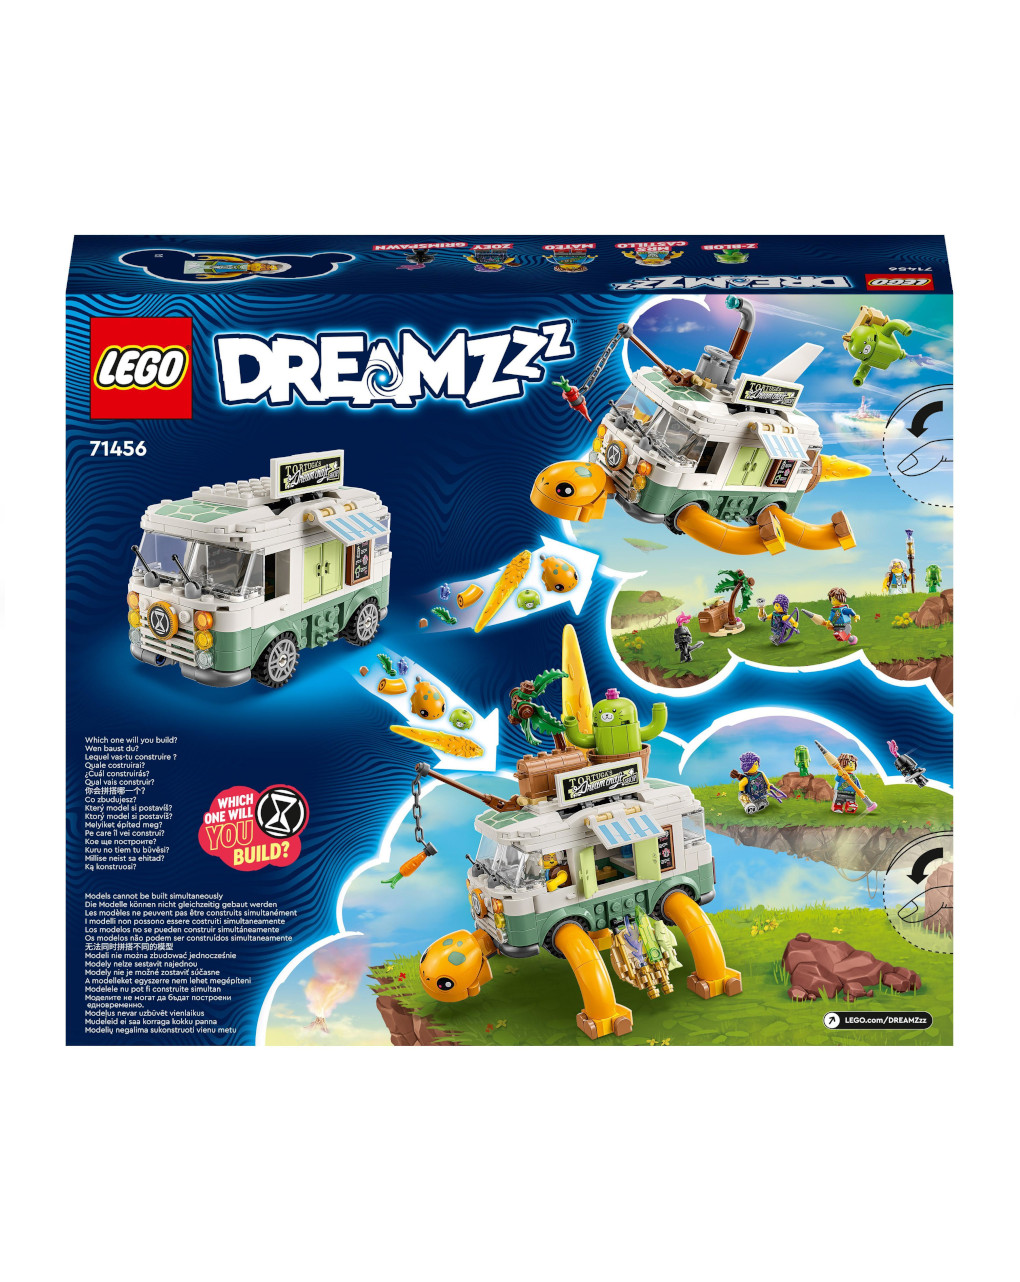 La furgoneta tortuga de la sra. castillo 71456 - lego dreamzzz - LEGO DREAMZZZ